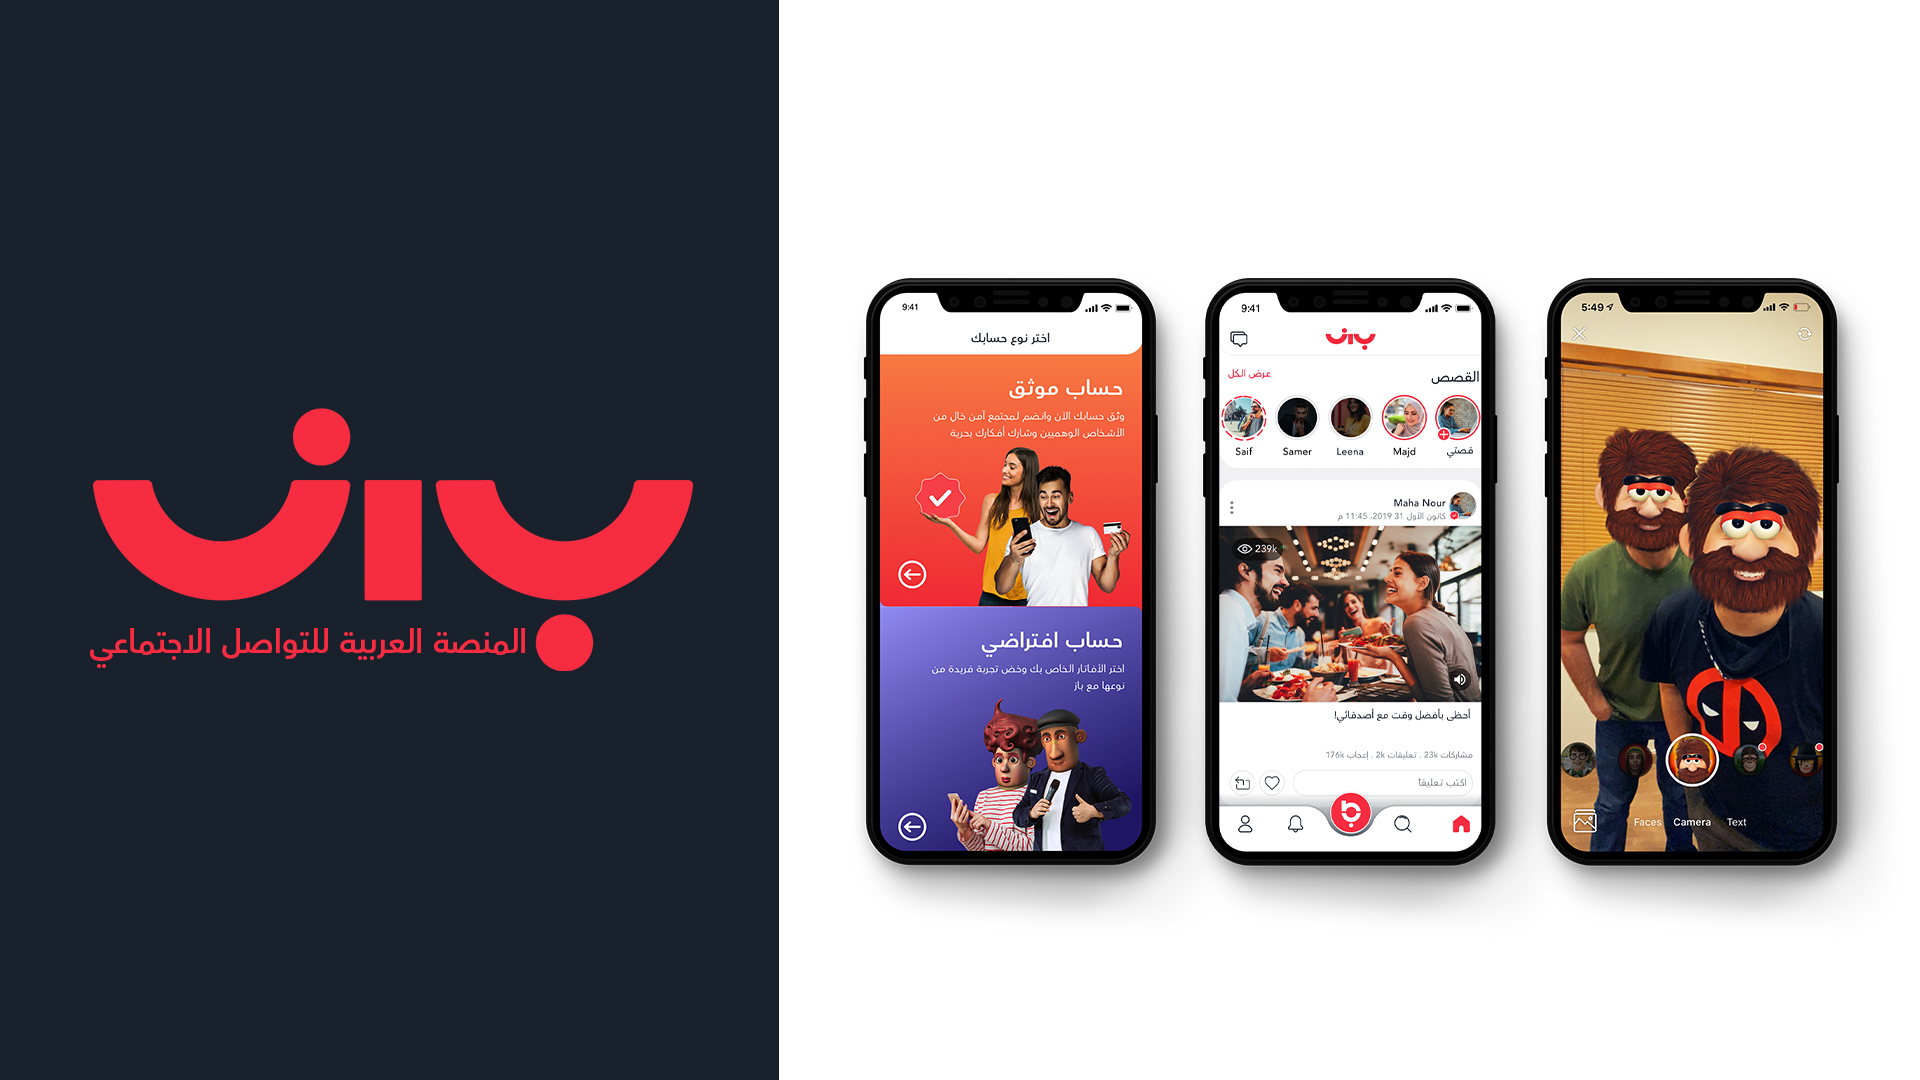 خمس خطوات للعثور على الحب عبر تطبيقات التواصل في البحرين  - البحث عن التطبيق المناسب